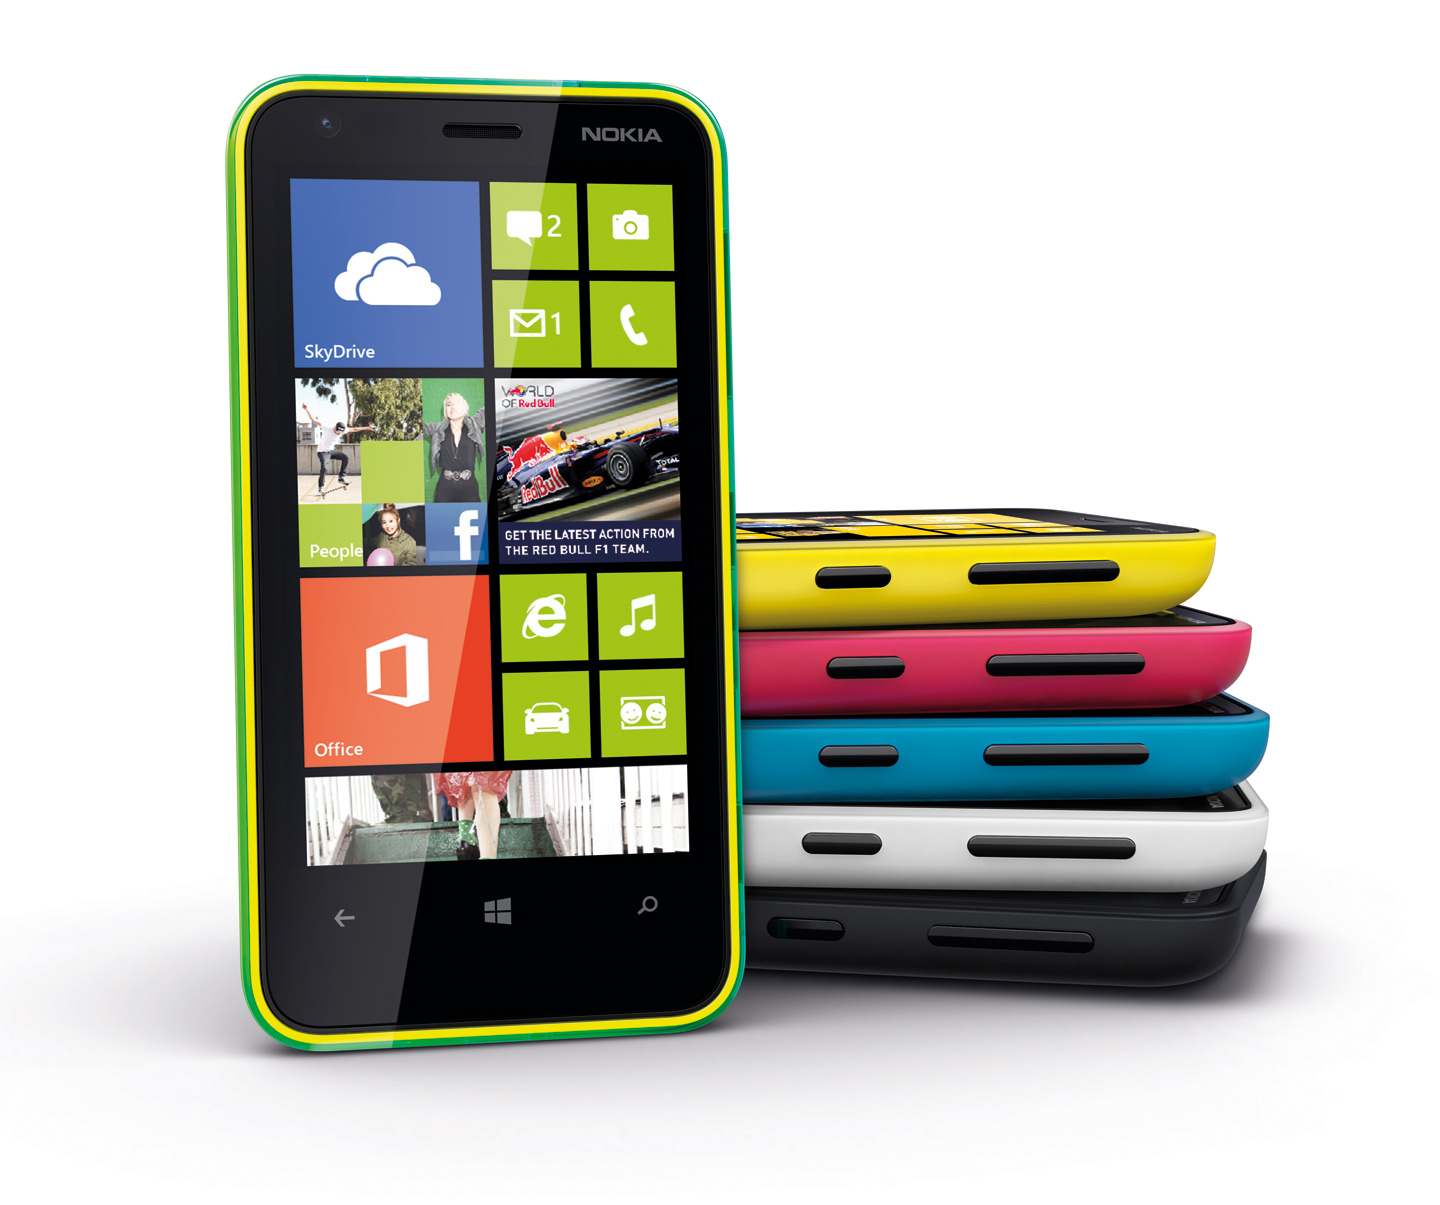 諾基亞Lumia 620